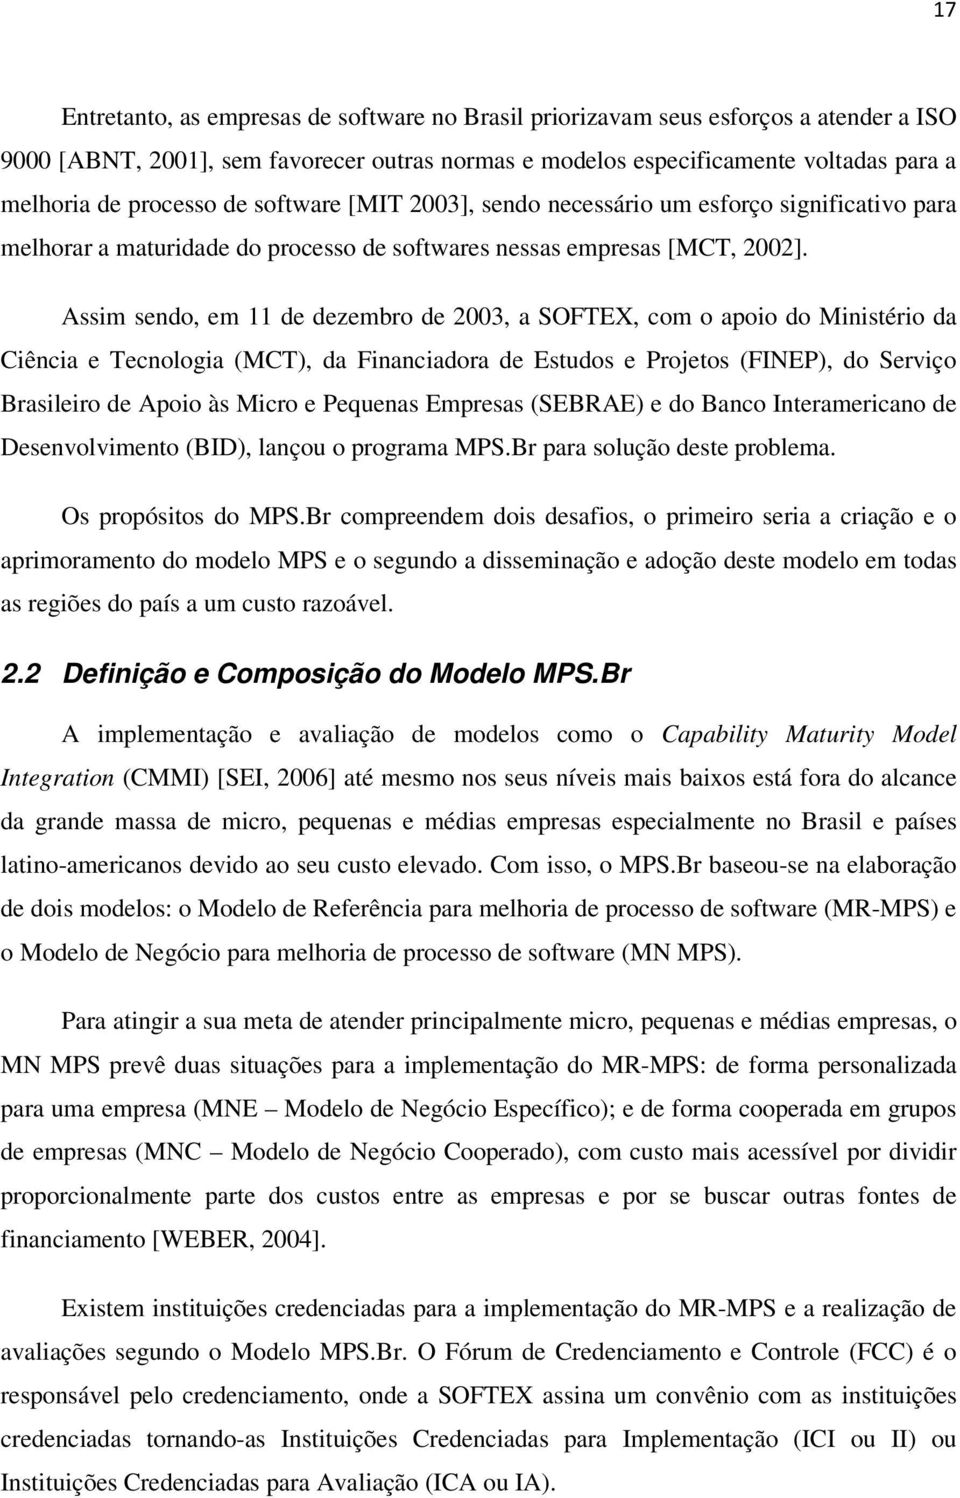 Assim sendo, em 11 de dezembro de 2003, a SOFTEX, com o apoio do Ministério da Ciência e Tecnologia (MCT), da Financiadora de Estudos e Projetos (FINEP), do Serviço Brasileiro de Apoio às Micro e